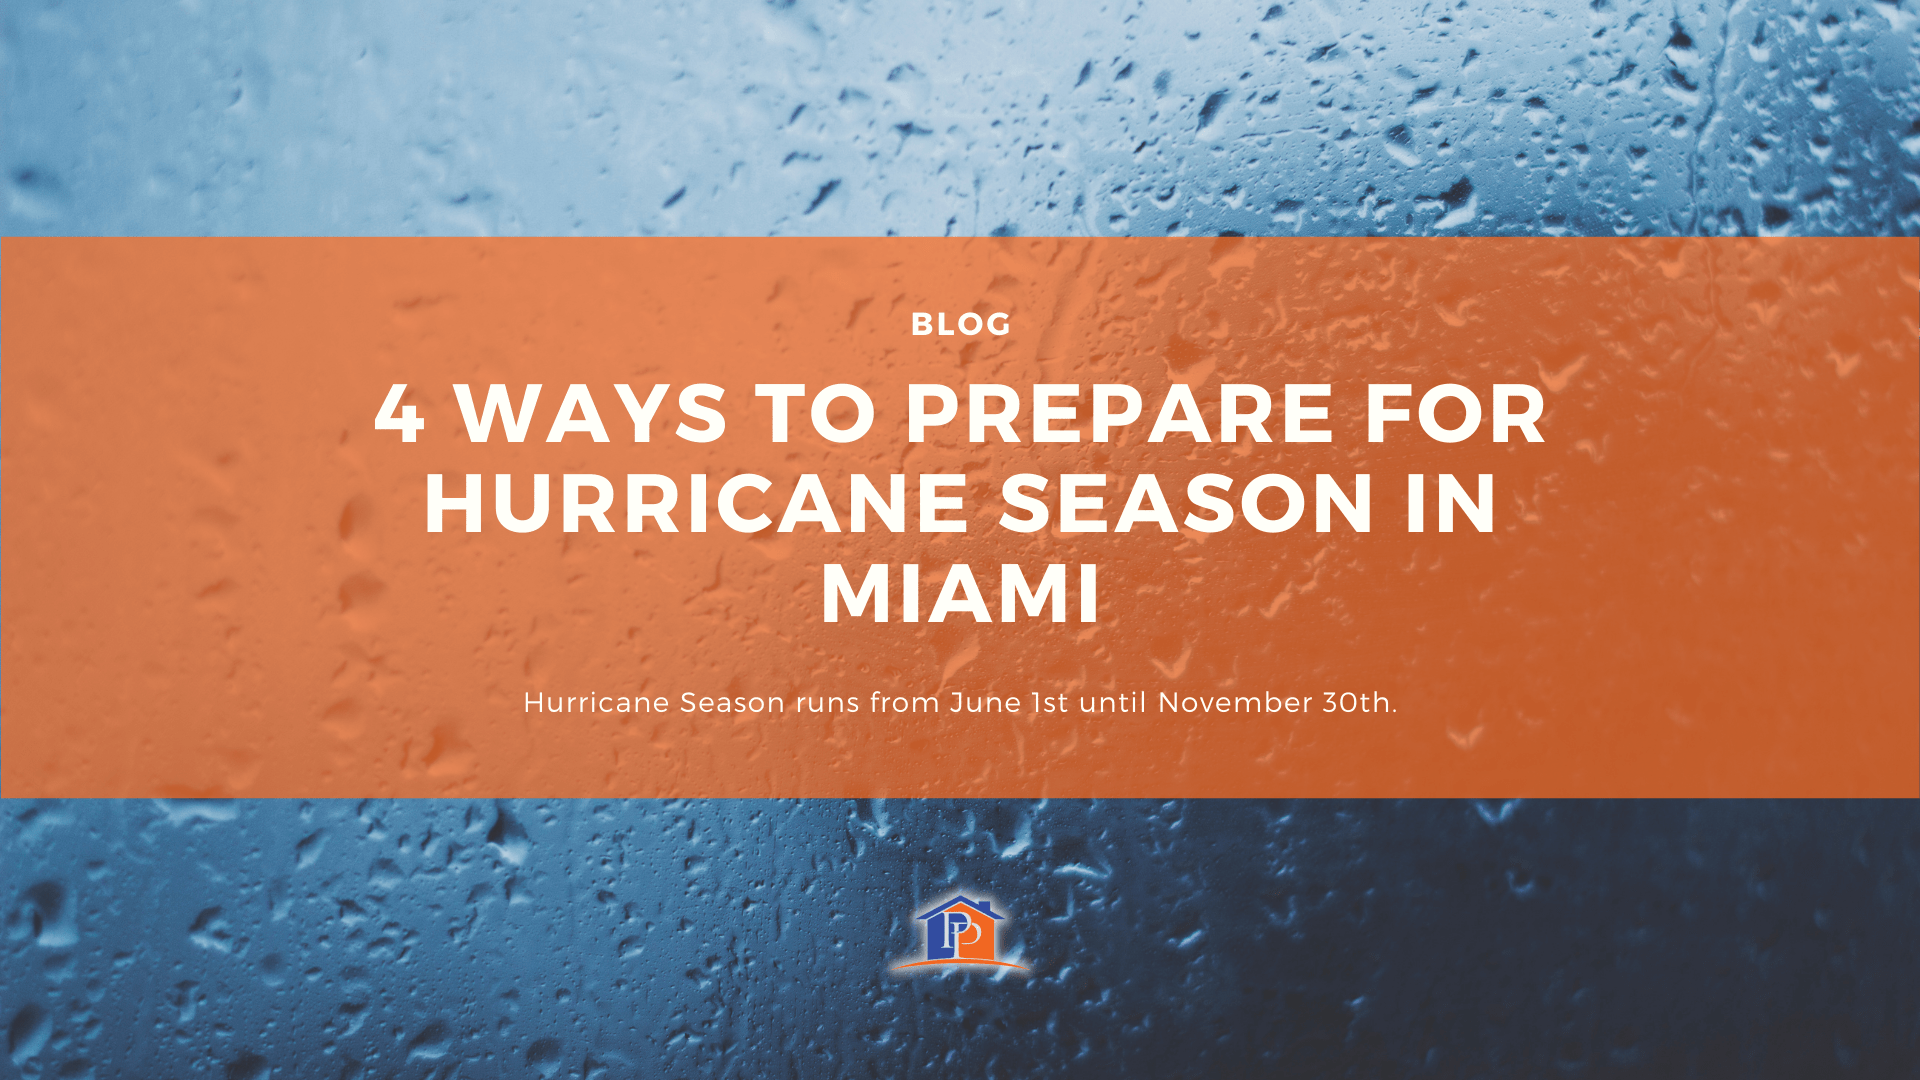 4 Ways to prepare for Hurricane season in Miami